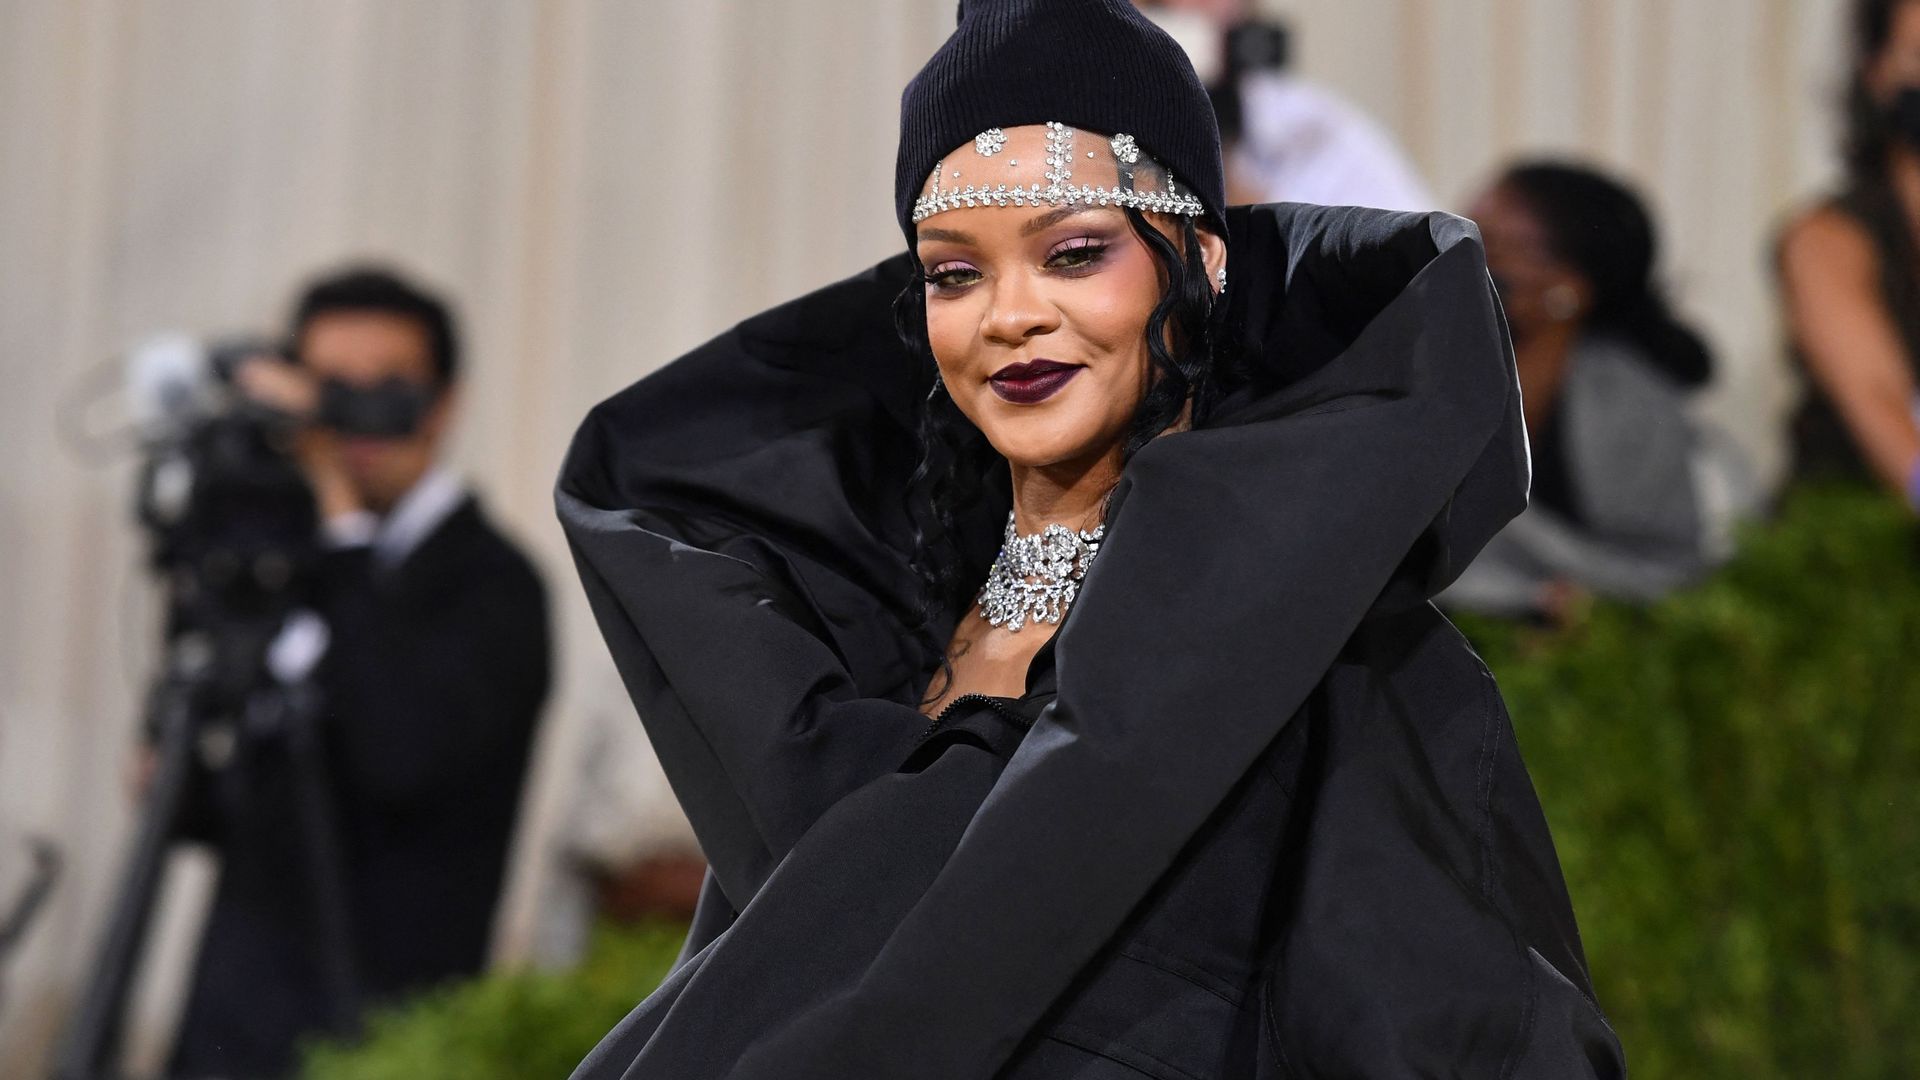 Le pardessus Balenciaga que portait Rihanna lors du MET Gala a fait sensation auprès des internautes.